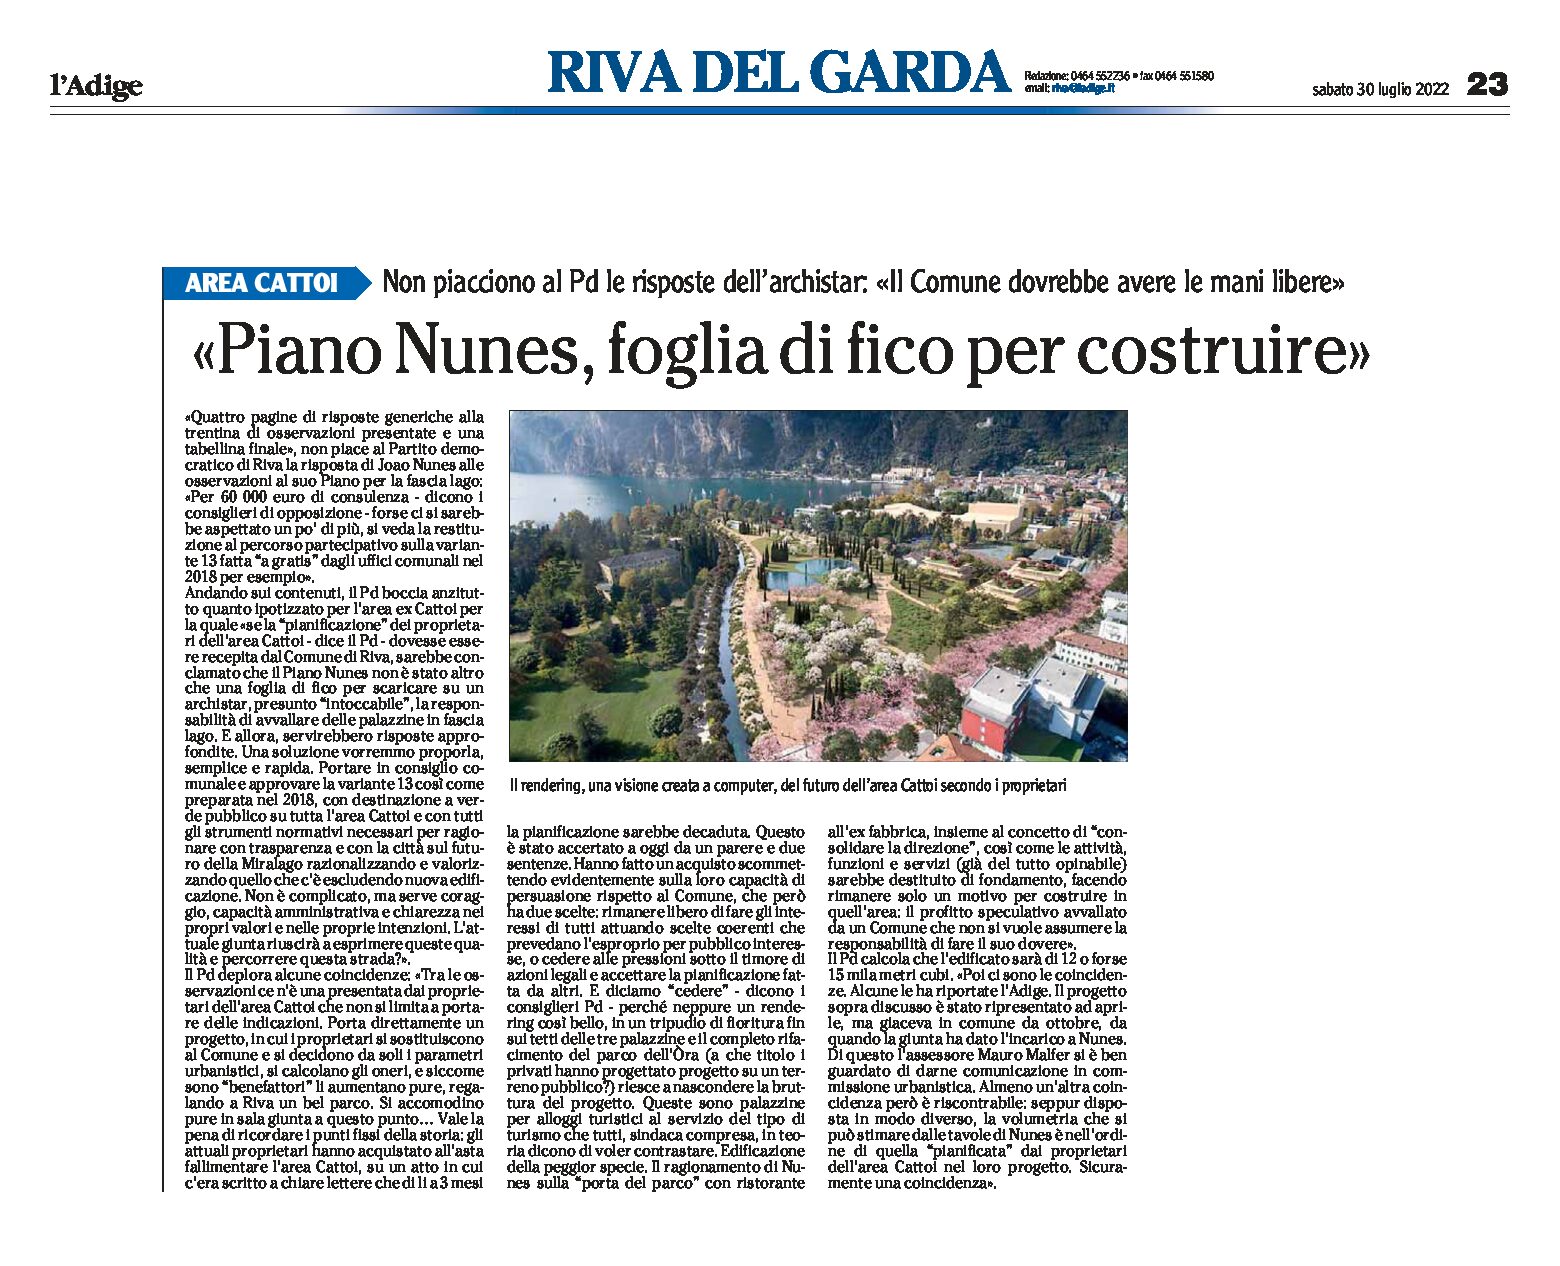 Riva, fascialago: il Pd critica le risposte di Nunes